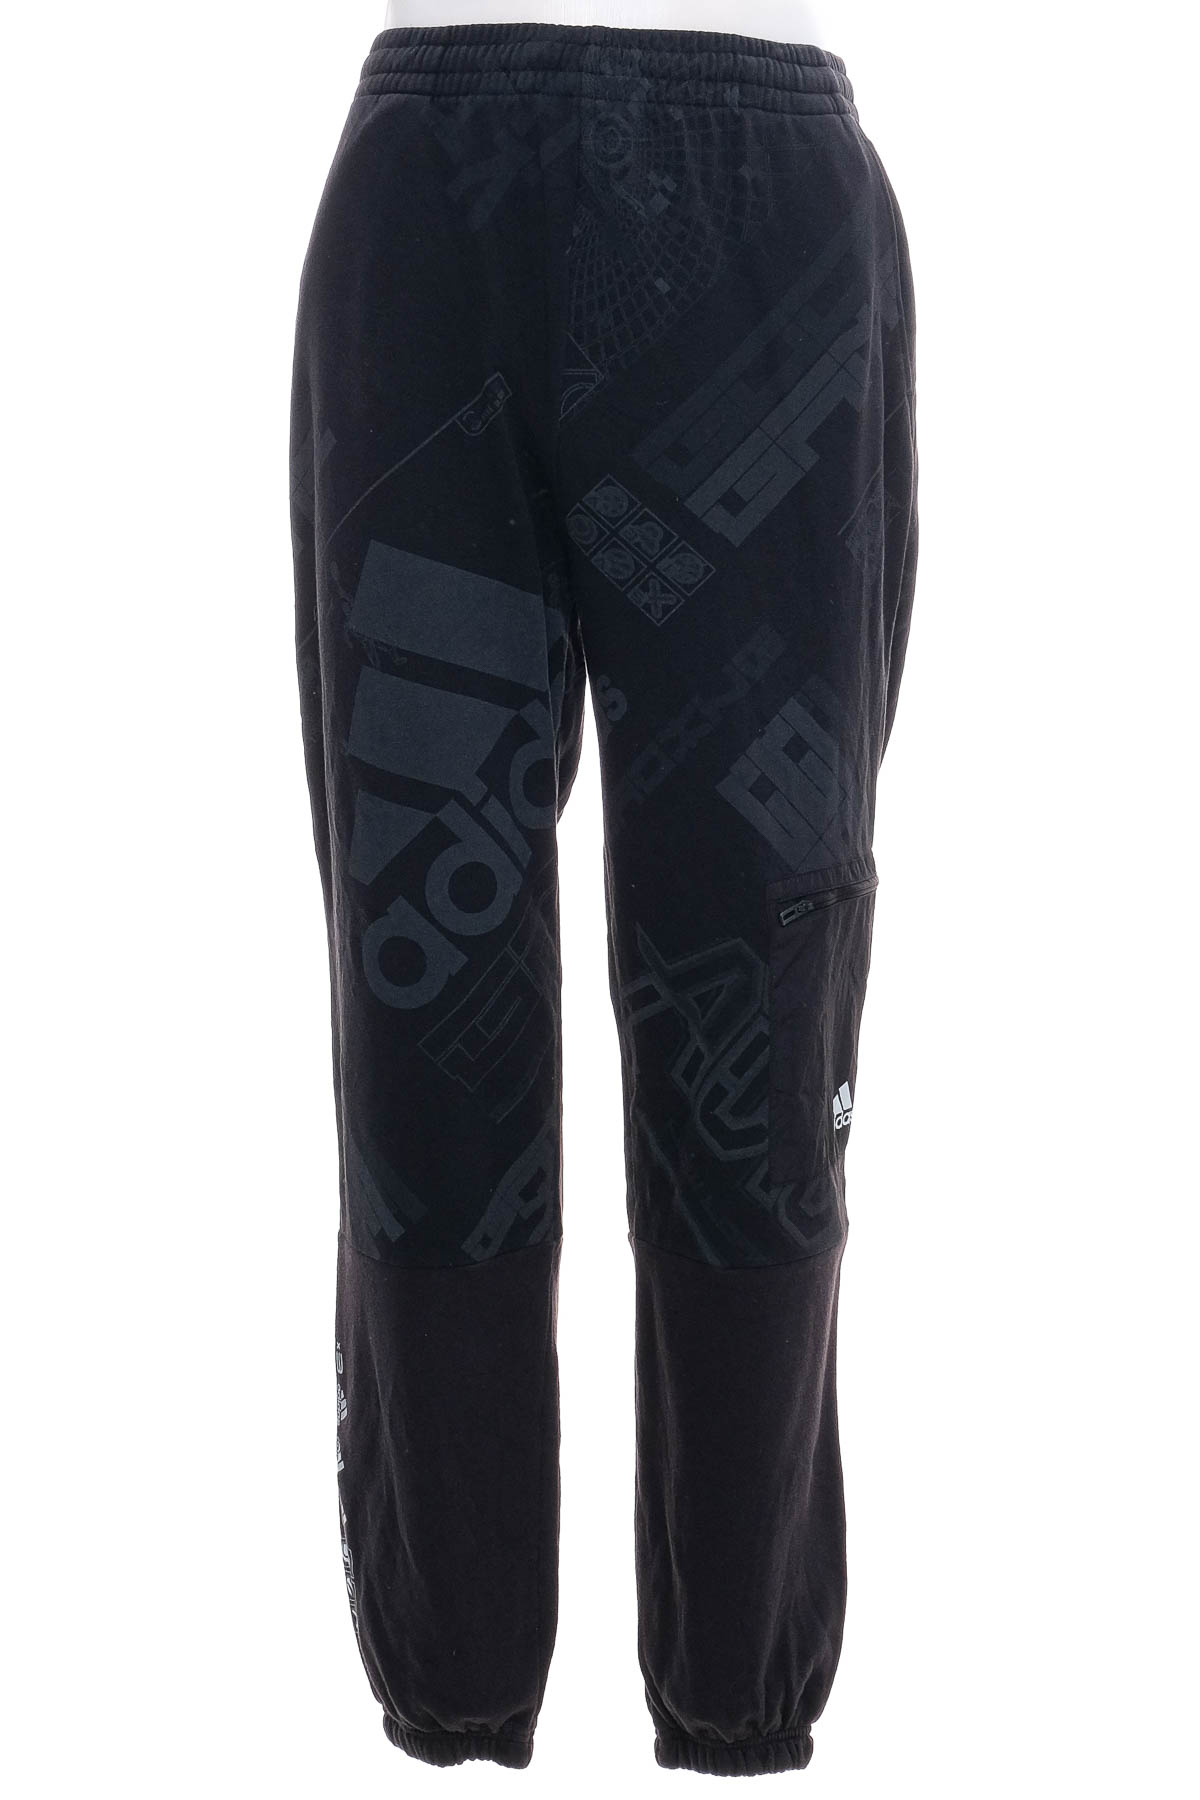 Pantaloni de sport pentru băiat - Adidas - 0